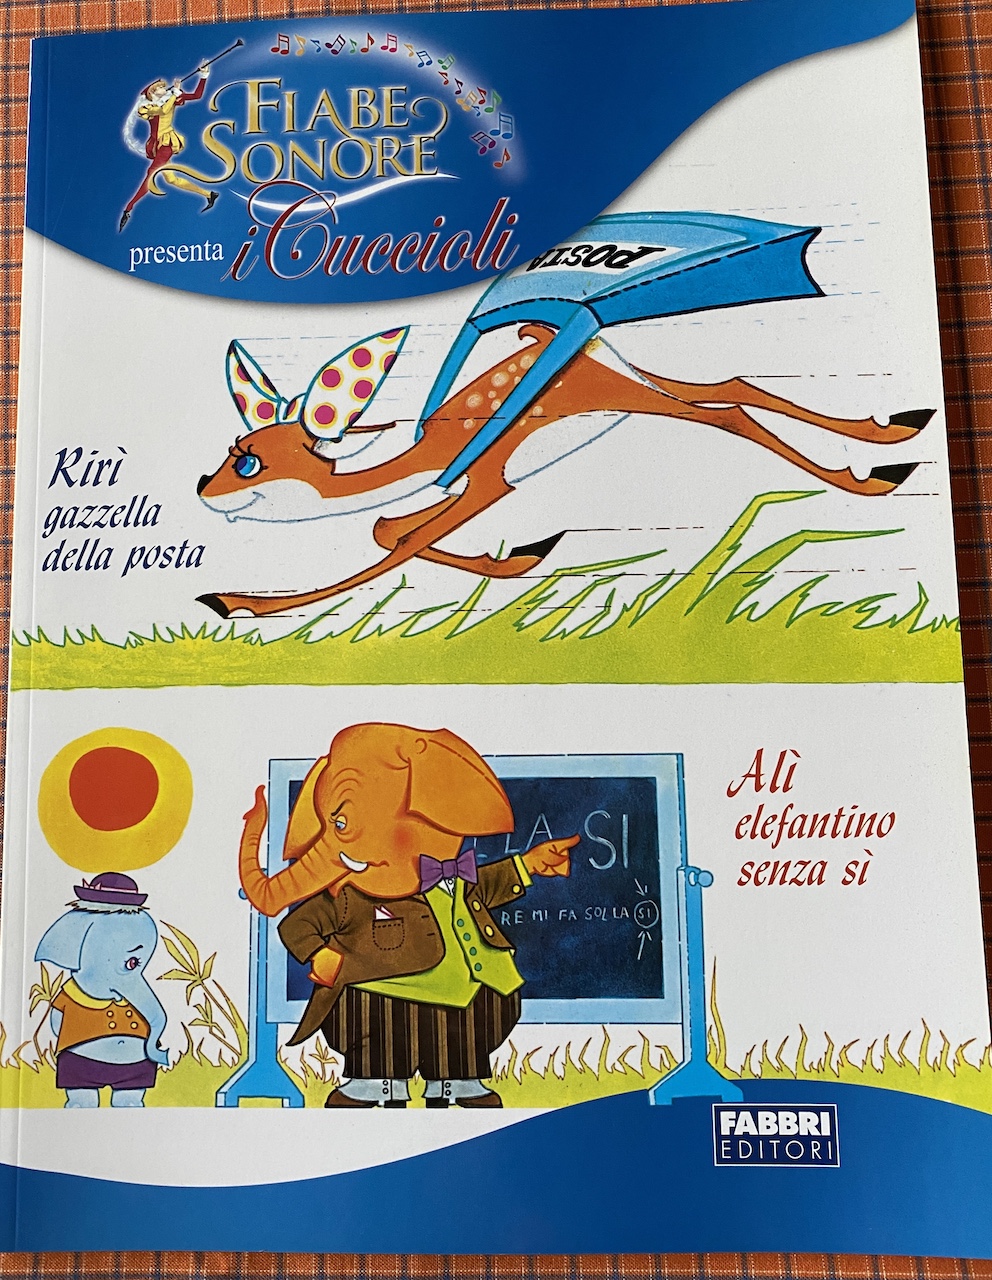 FIABE SONORE - i cuccioli - Kiri gazzella della posta - Ali' elefantino si'  - libro e CD - Insegna